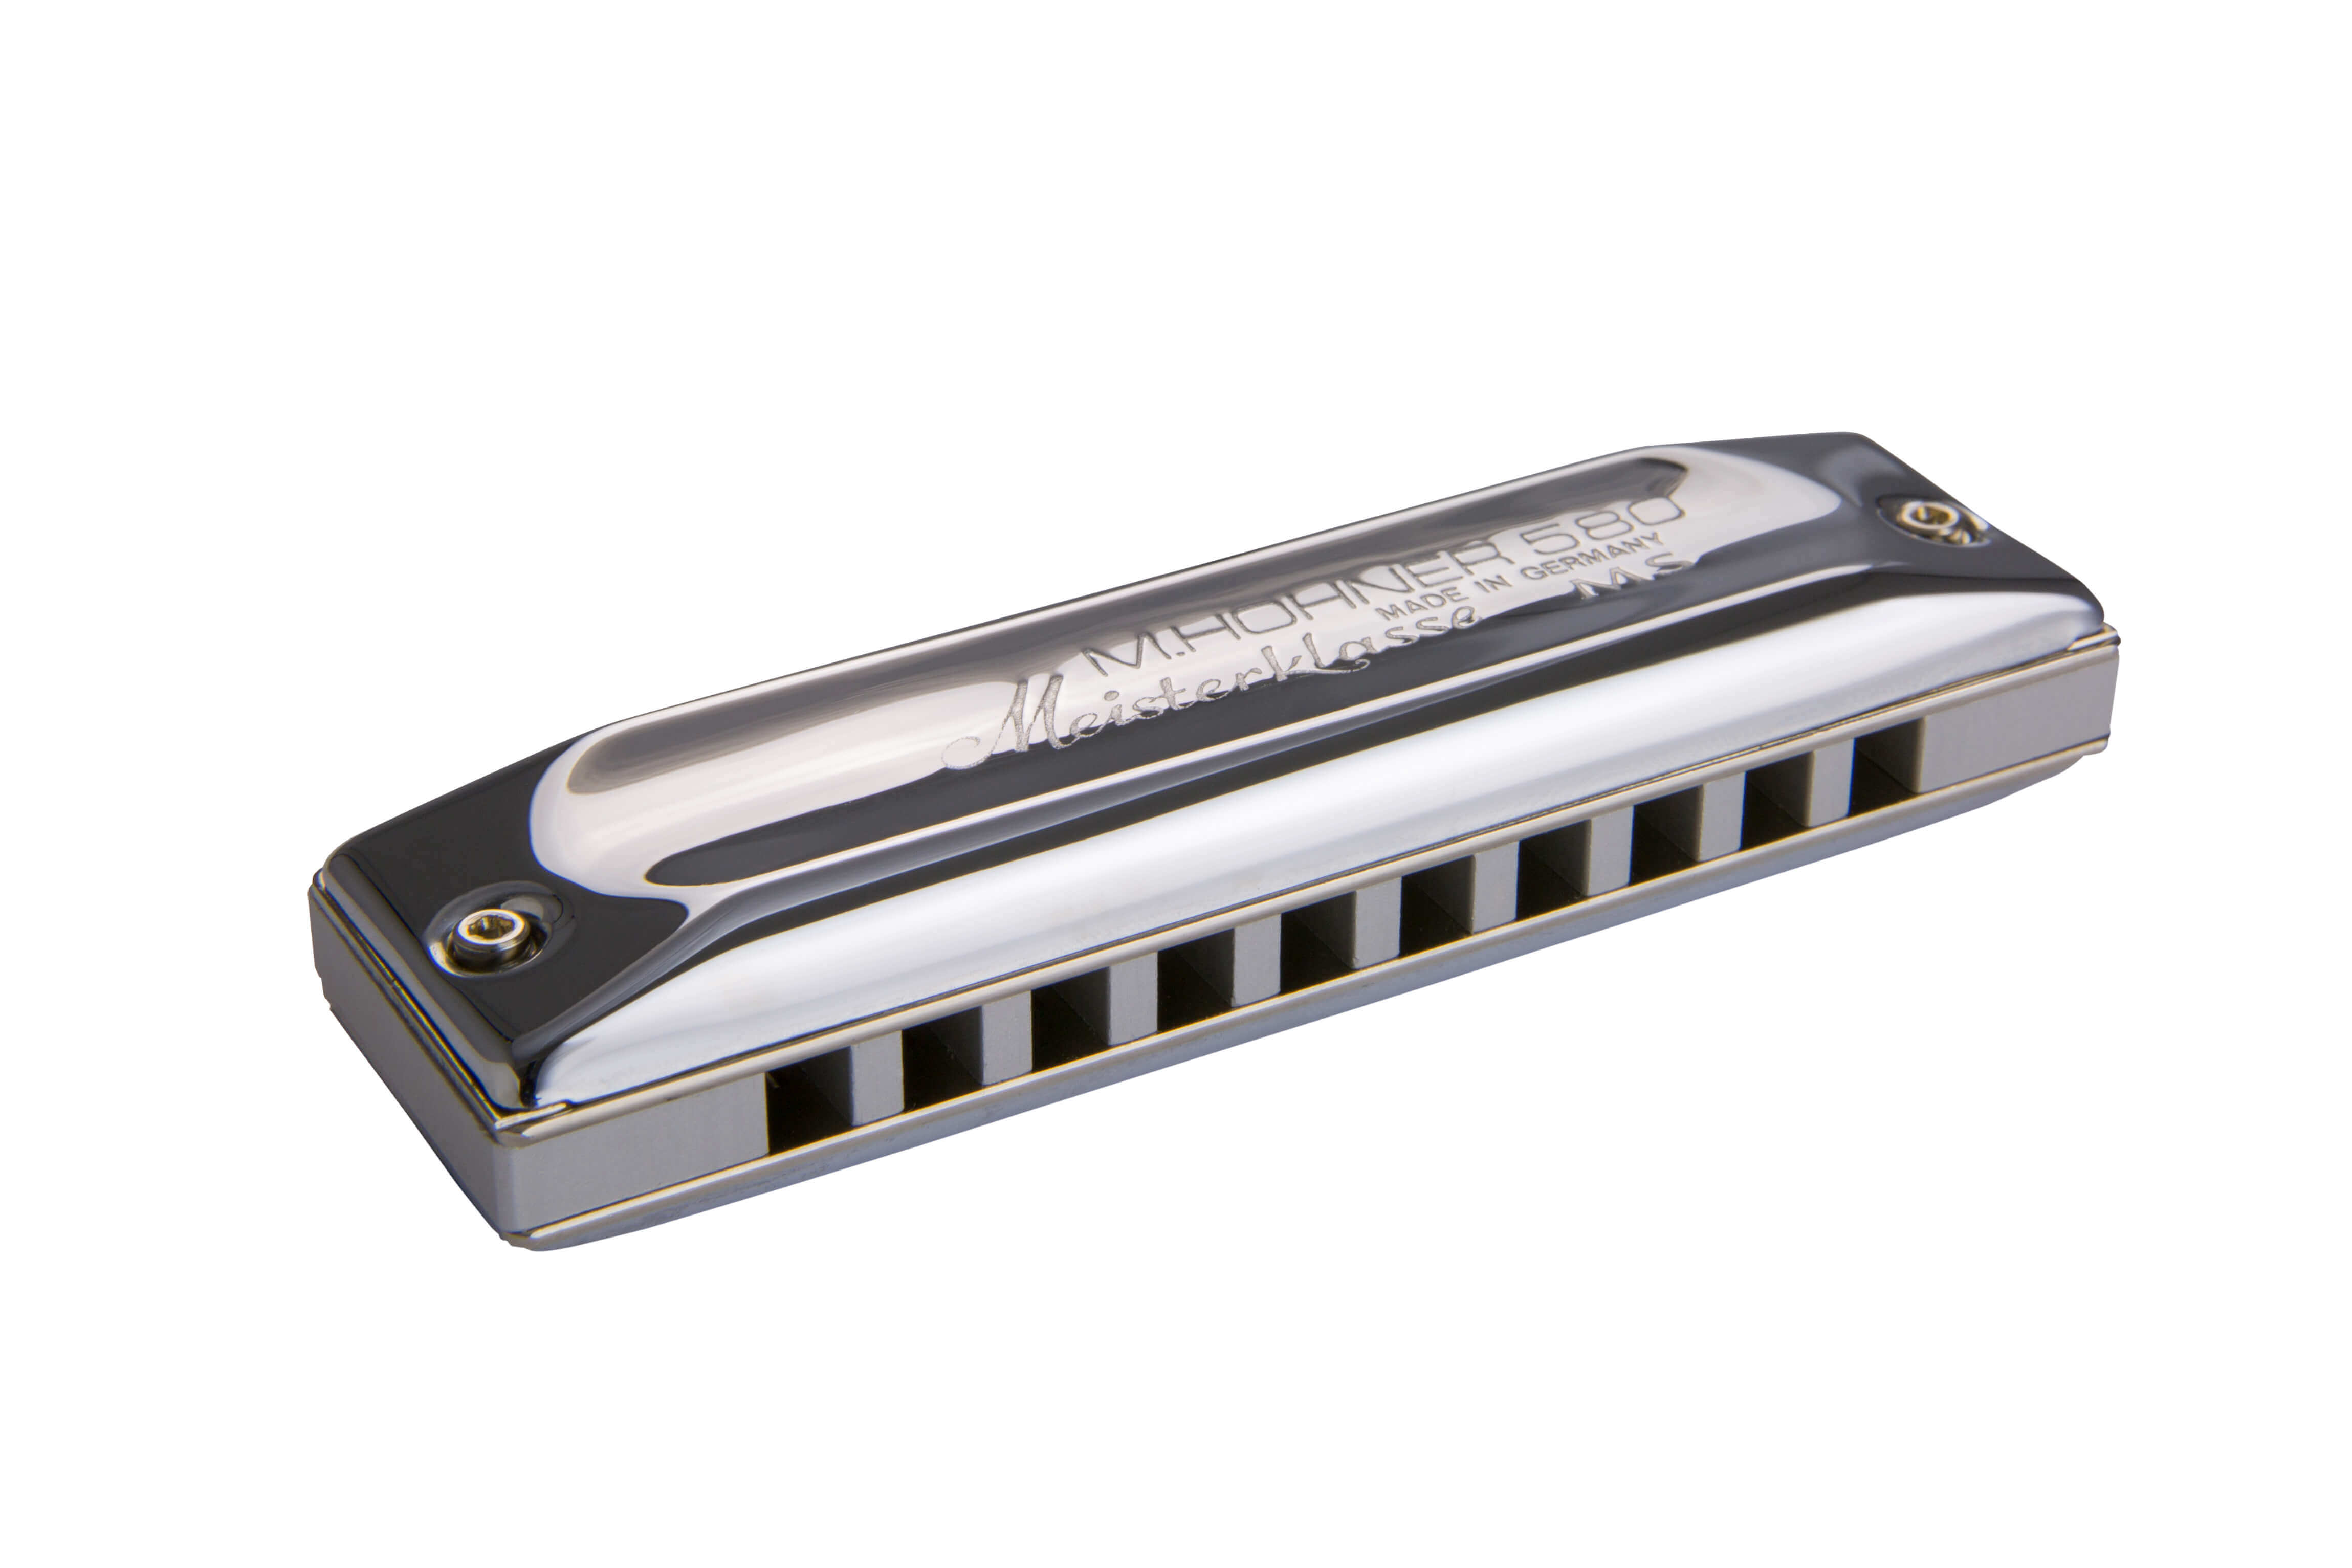 Hohner meisterklasse diatonic harmonica key of C available in all 12 keys